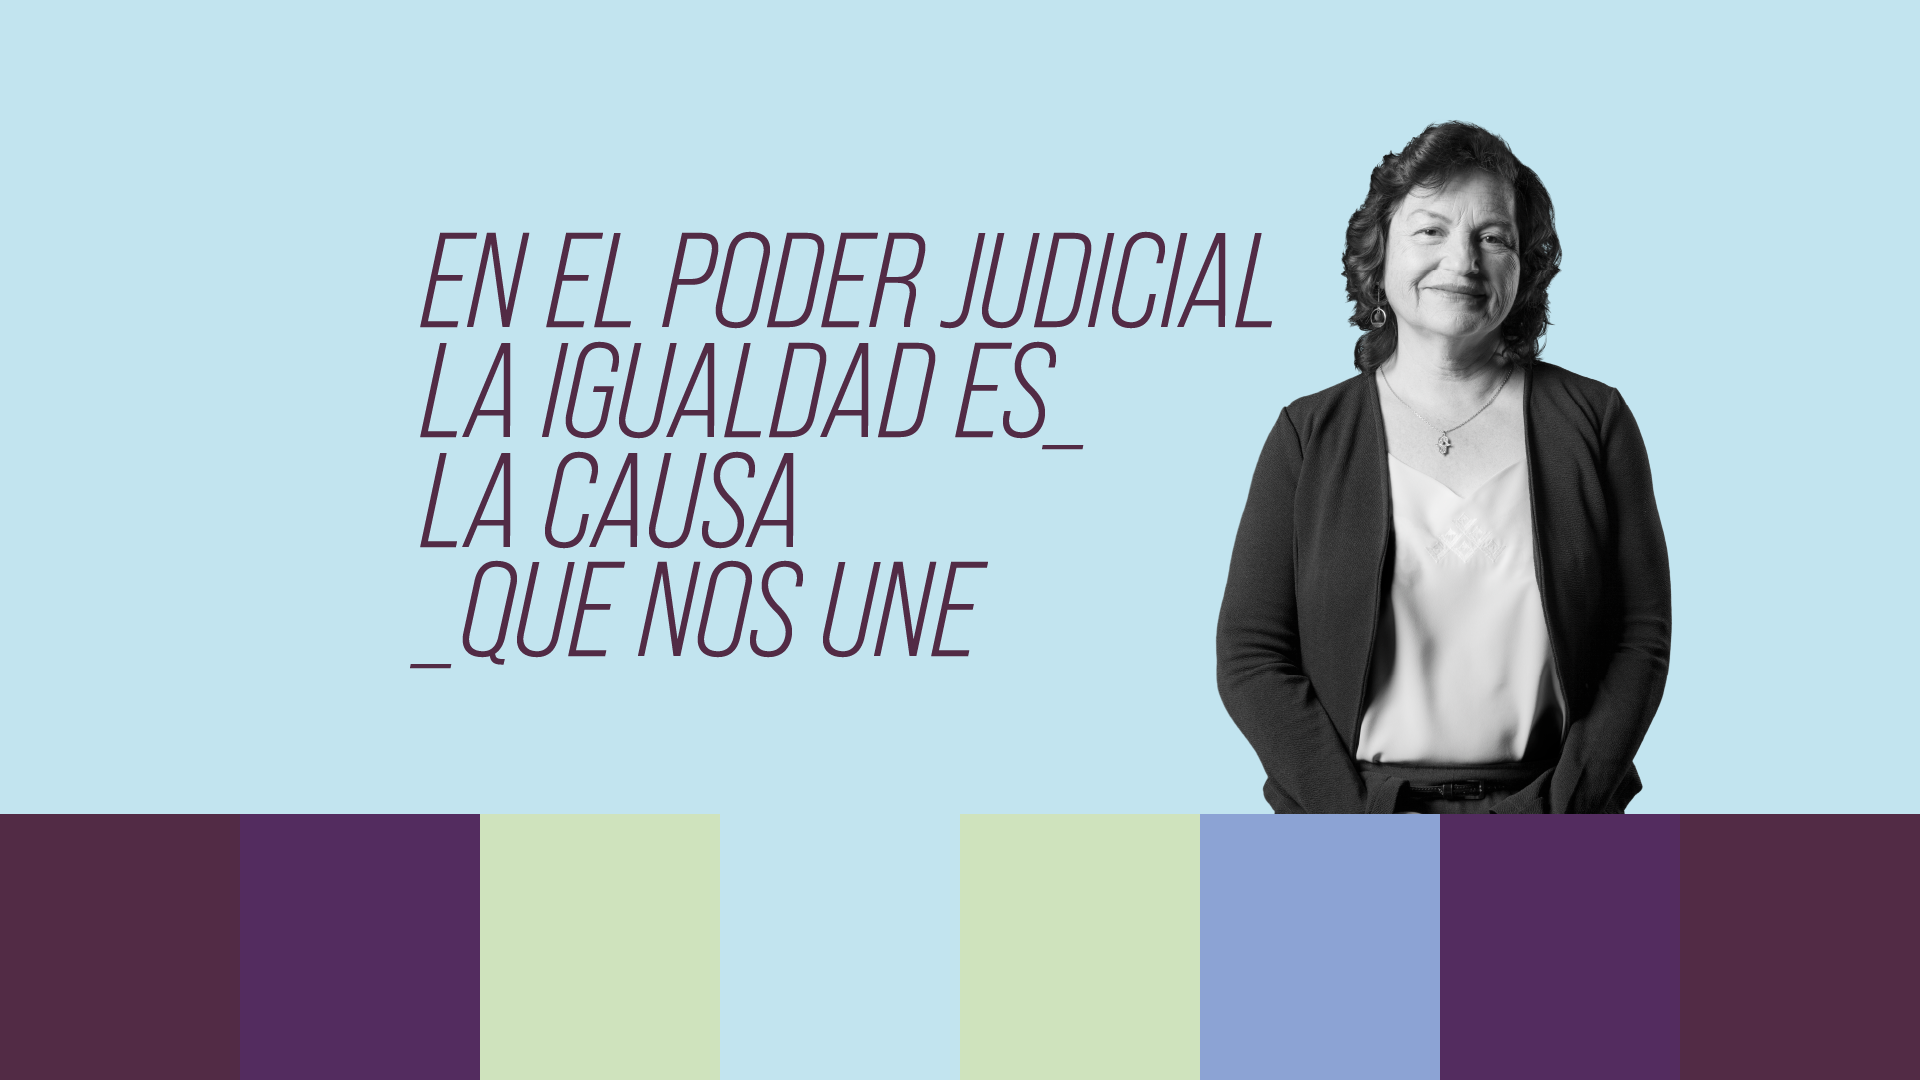 Campaña de sensibilización para promover el buen trato y las relaciones igualitarias en el Poder Judicial de Chile